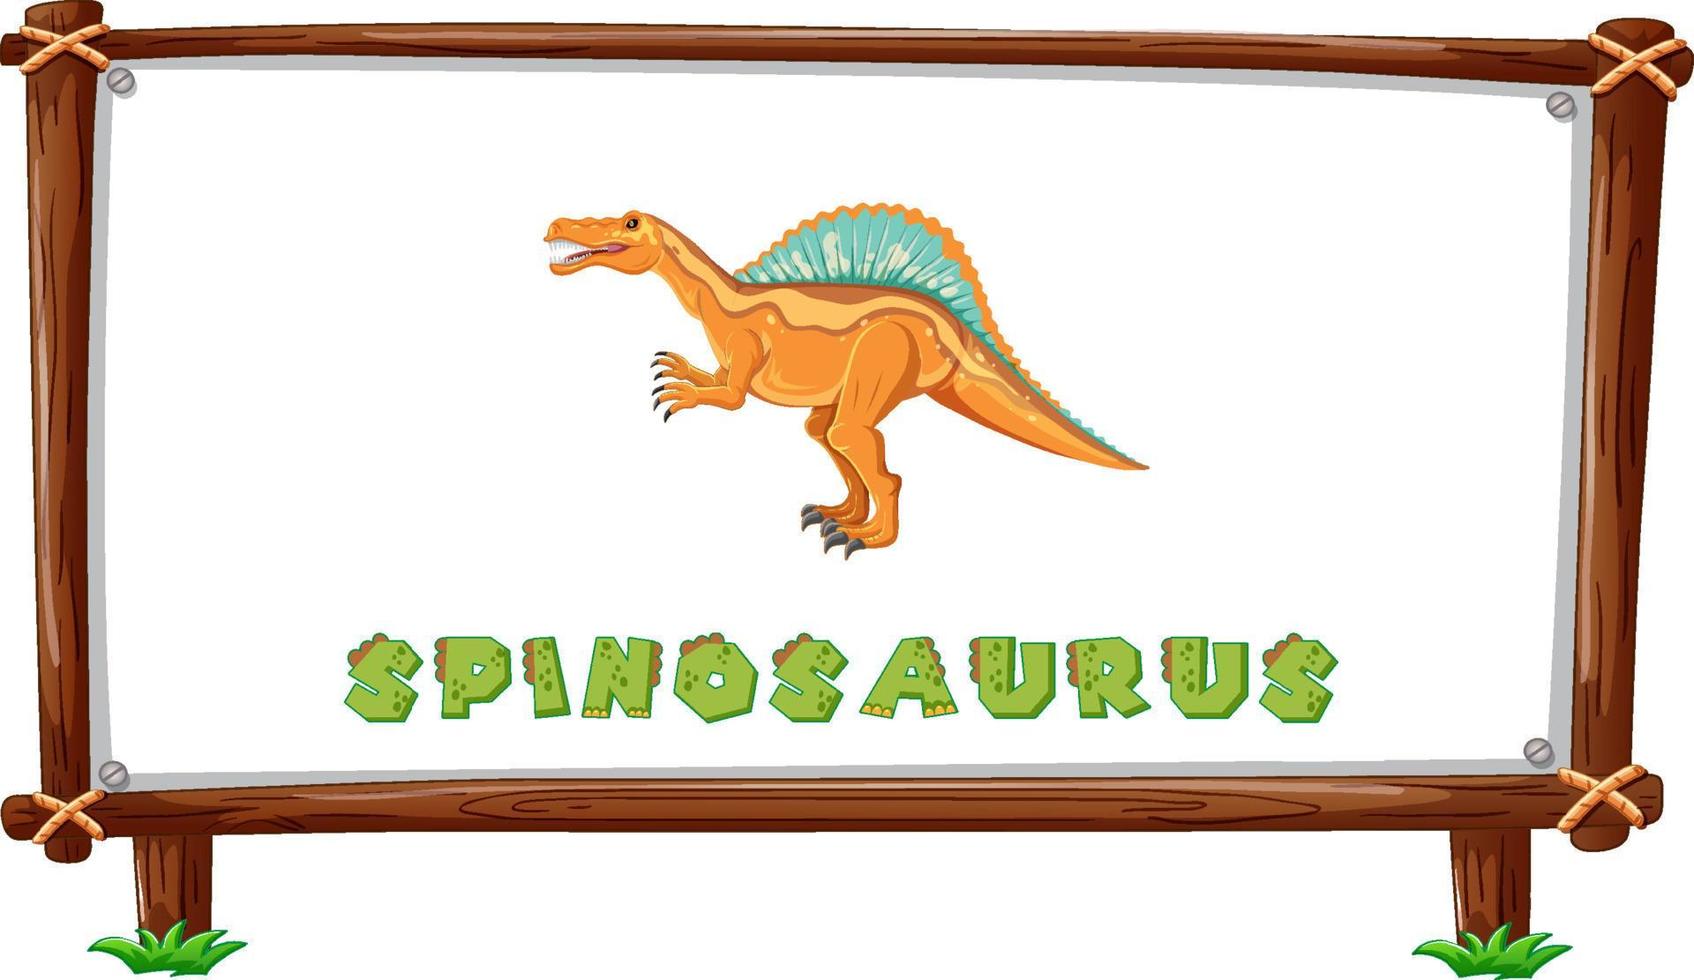 modello di cornice con dinosauri e testo spinosauro all'interno vettore